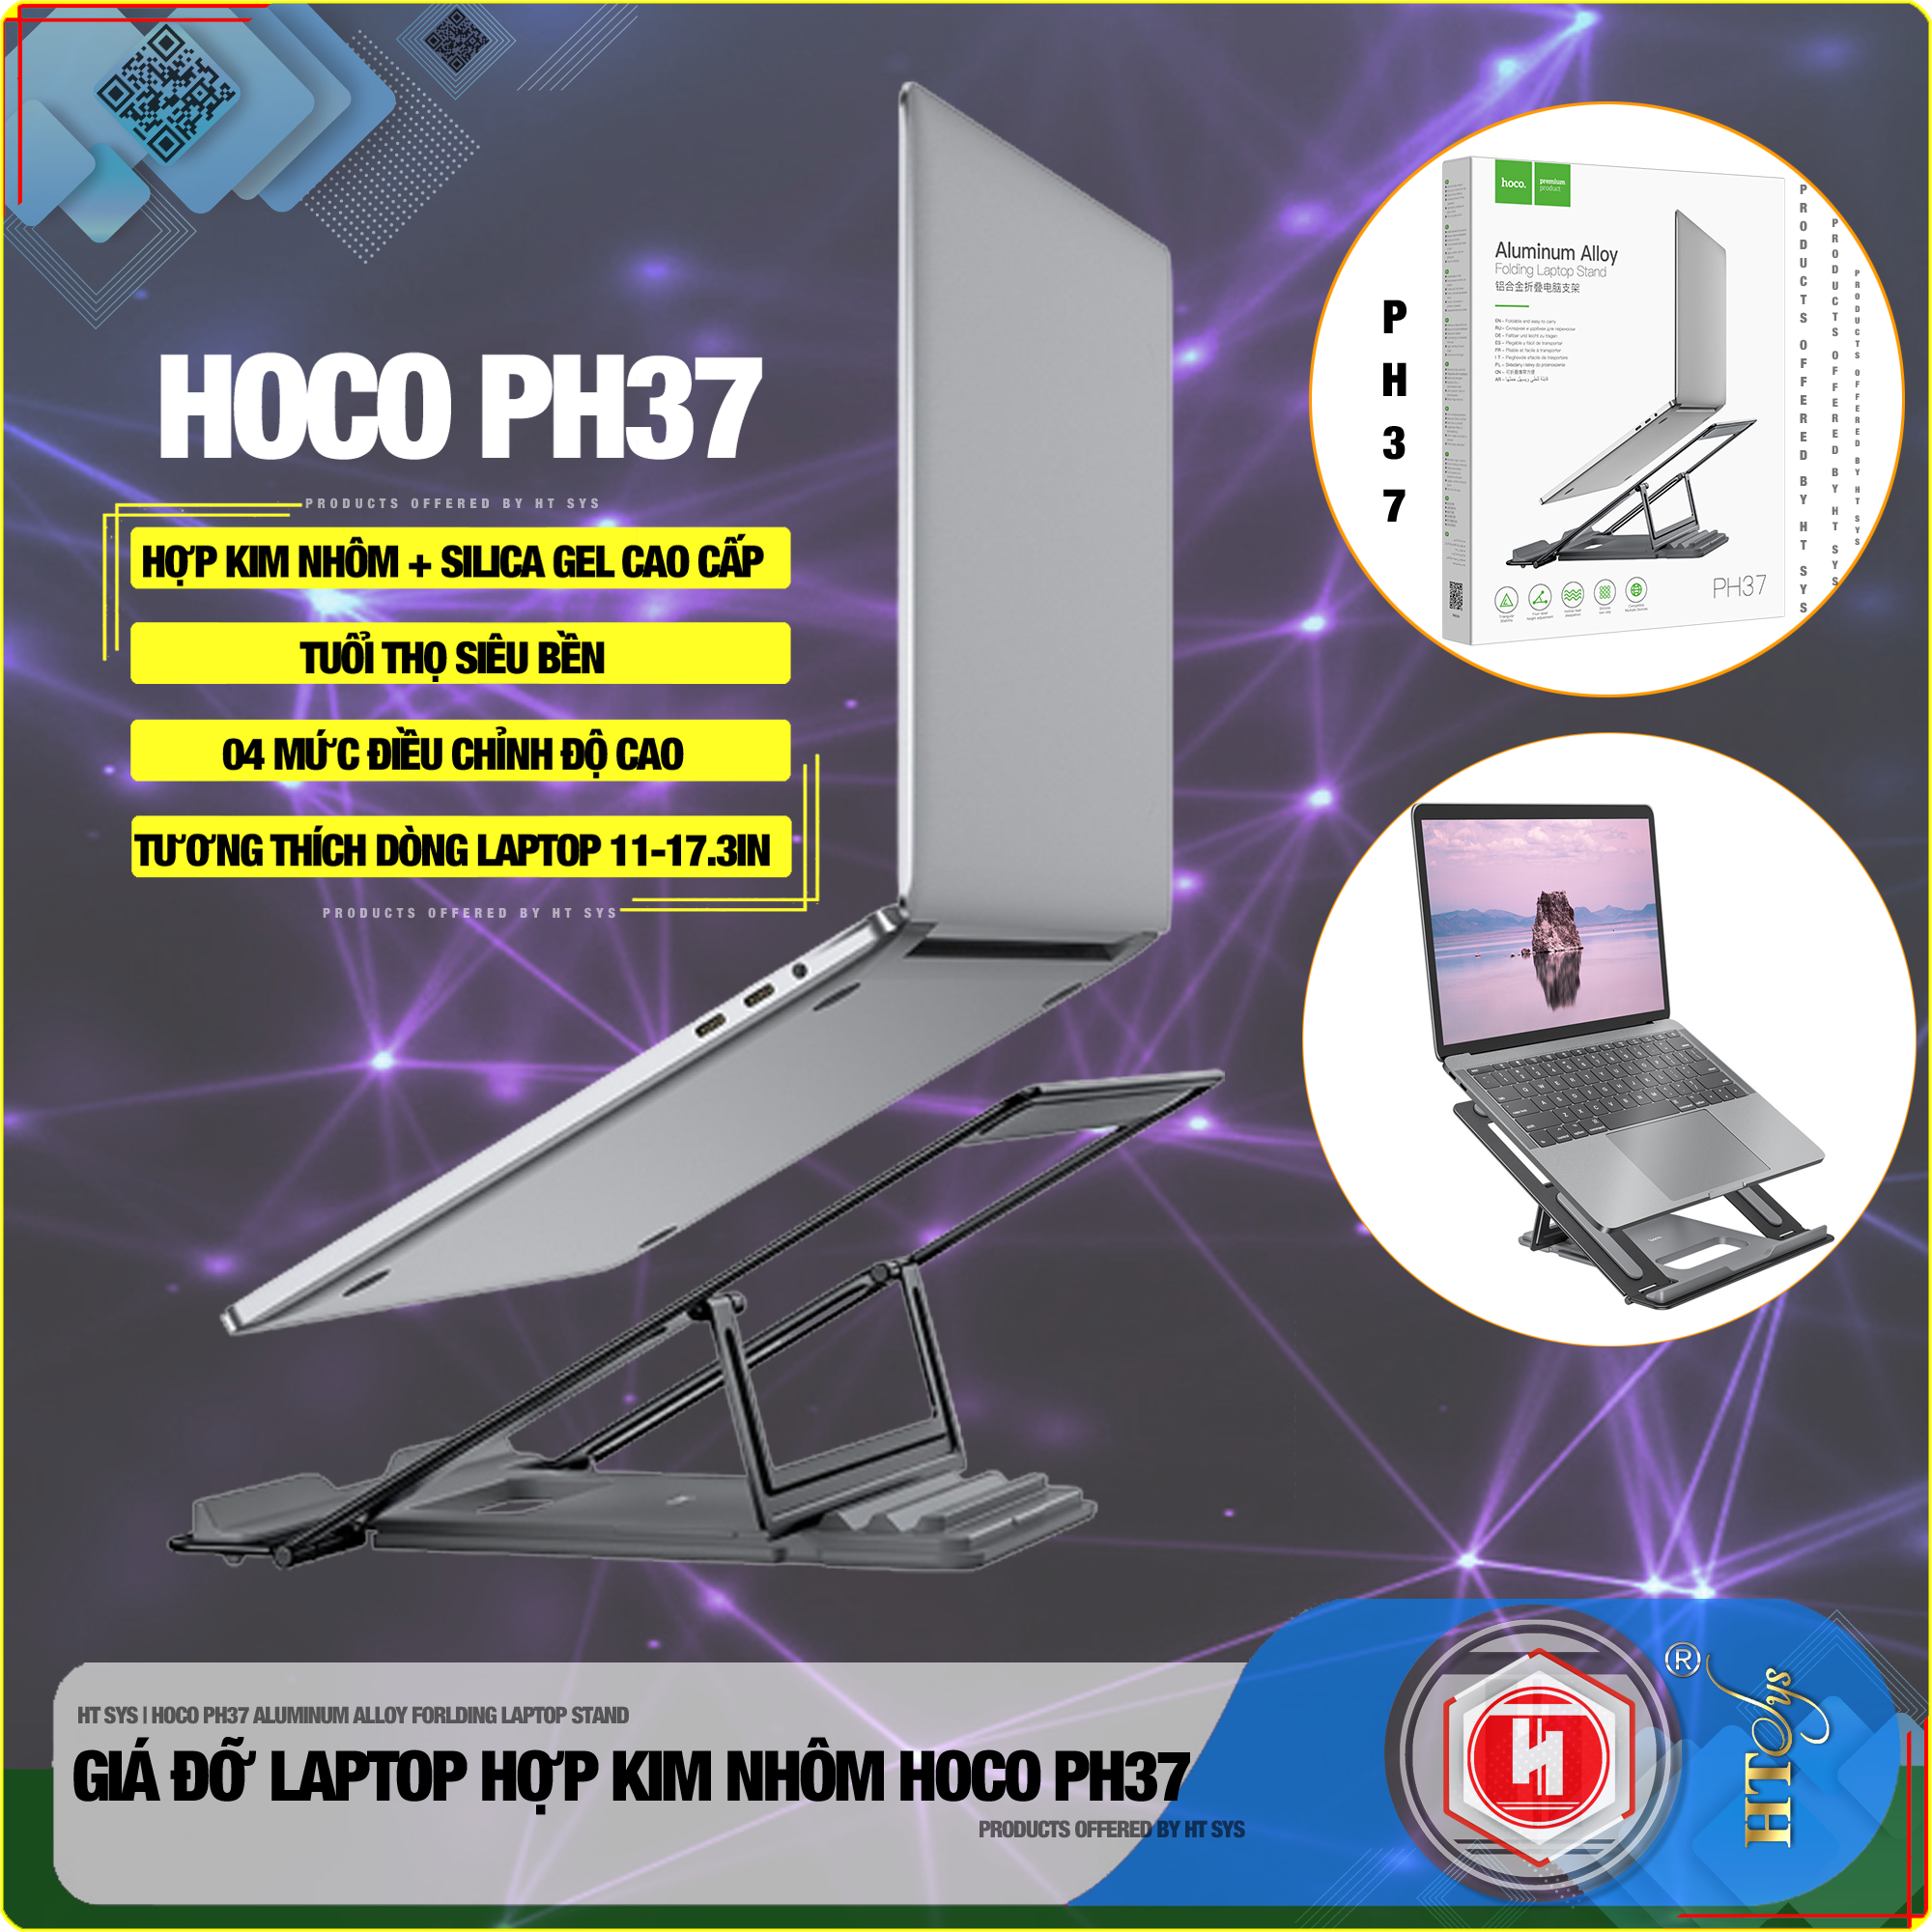 Giá đỡ laptop gấp gọn HT SYS hoco PH37 ALUMINUM alloy  FORLDING laptop STAND - Hợp kim nhôm cao cấp - Đế tản nhiệt laptop, macbook, máy tính xách tay - 04 Chế độ điều chỉnh góc độ - Phù hợp cho máy 11-17.3 inch - [ Hàng Nhập Khẩu ]